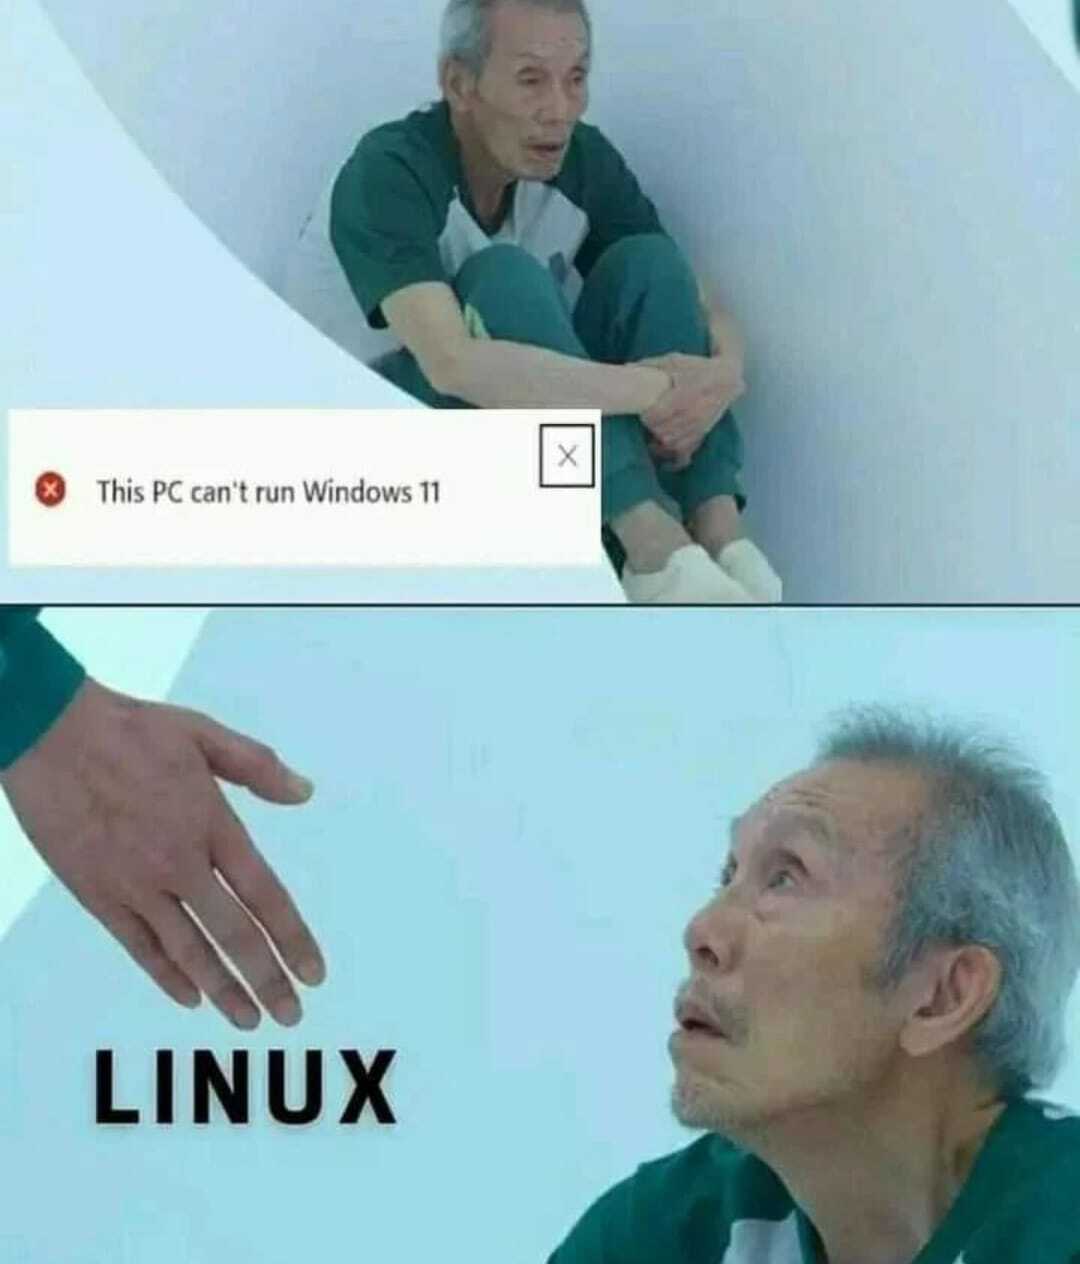 Linux squid distro! 😅😂